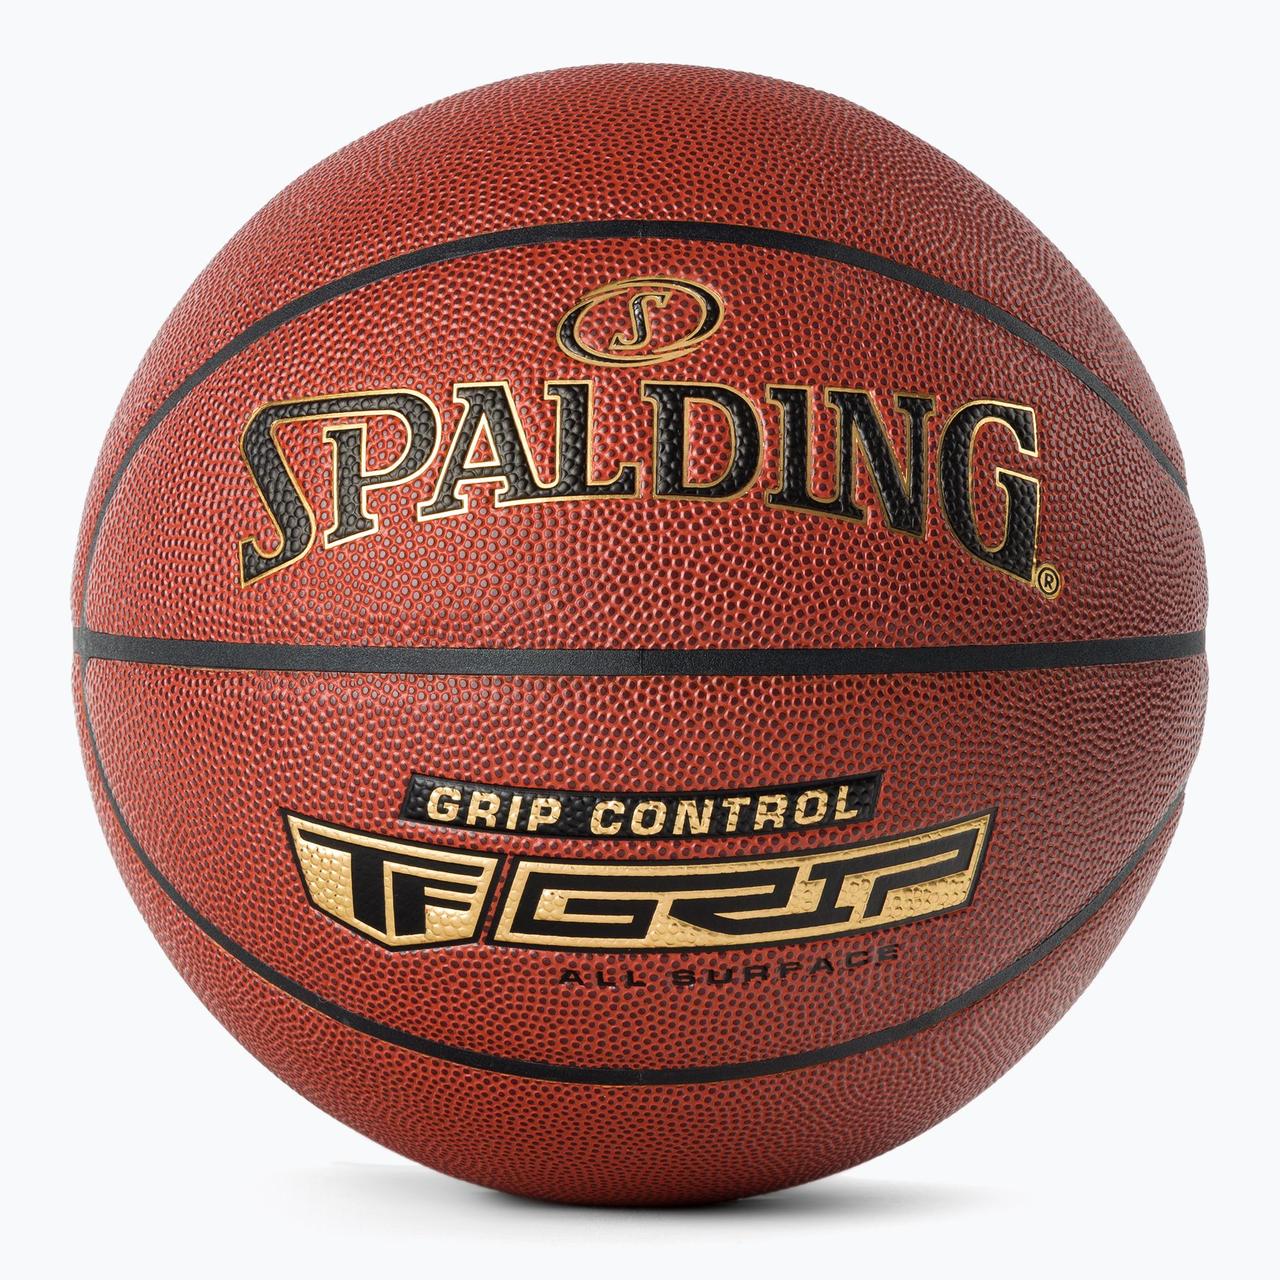 М'яч баскетбольний Spalding Grip Control In-outdoor розмір 7 композитна шкіра для вулиці-залу (76875Z)